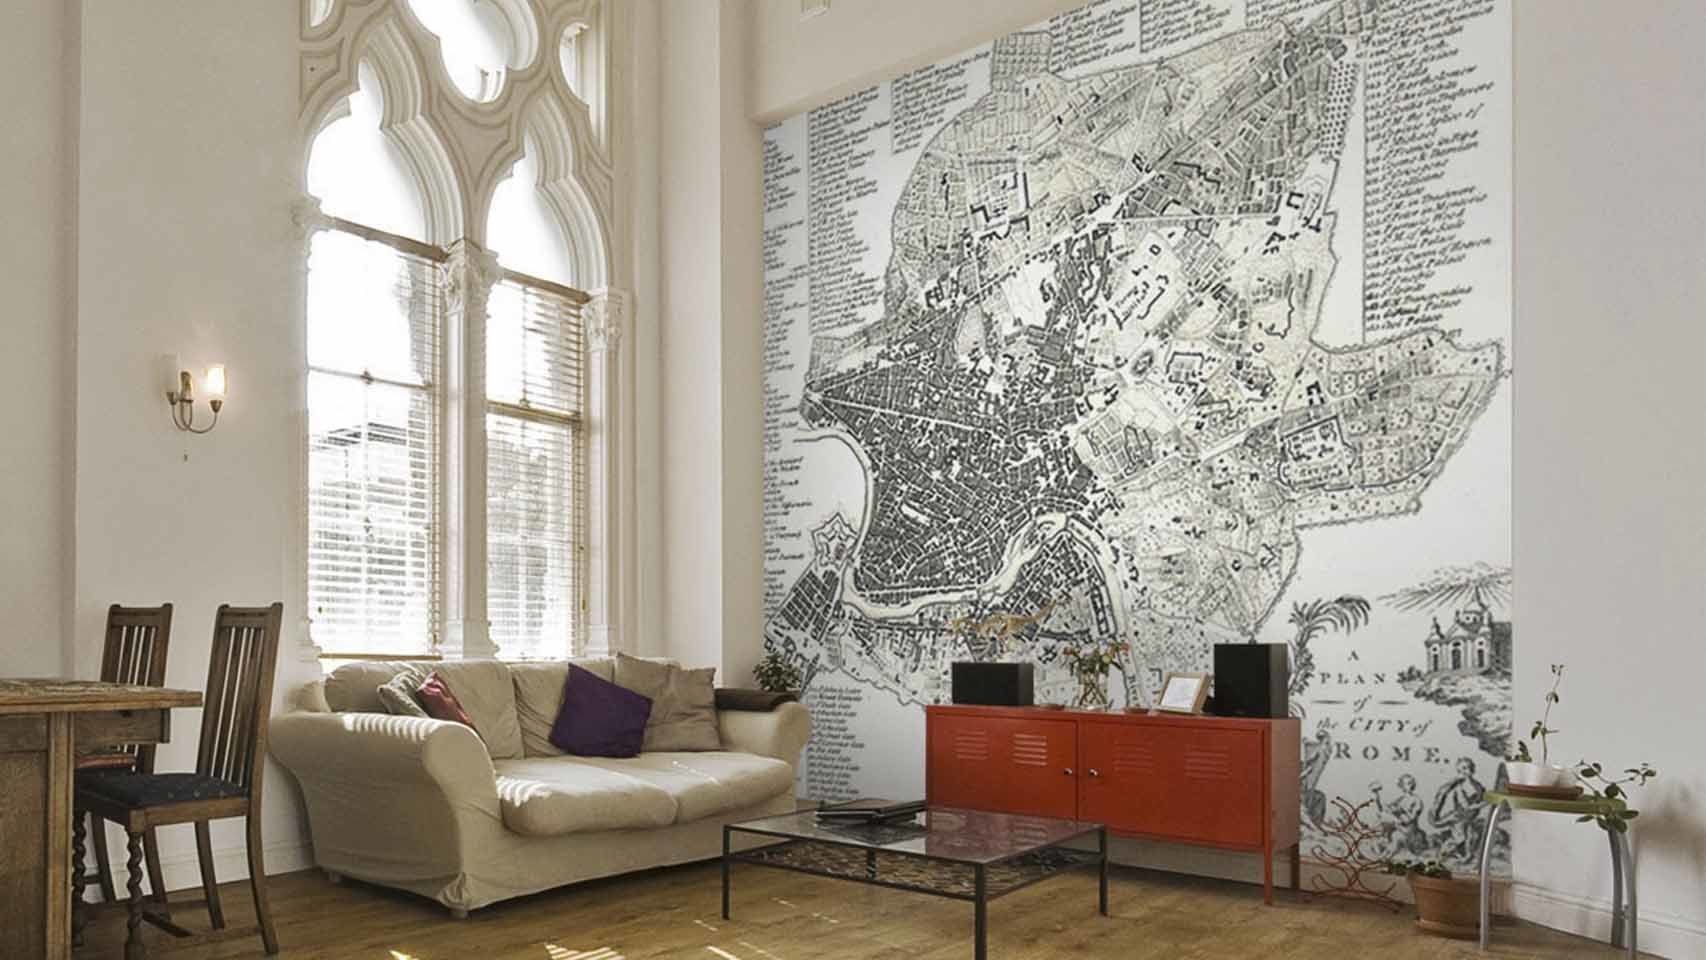 Wallpapered hace papeles pintados personalizados, tanto en formato mapamundi como urbanos de una zona de la ciudad que desees.